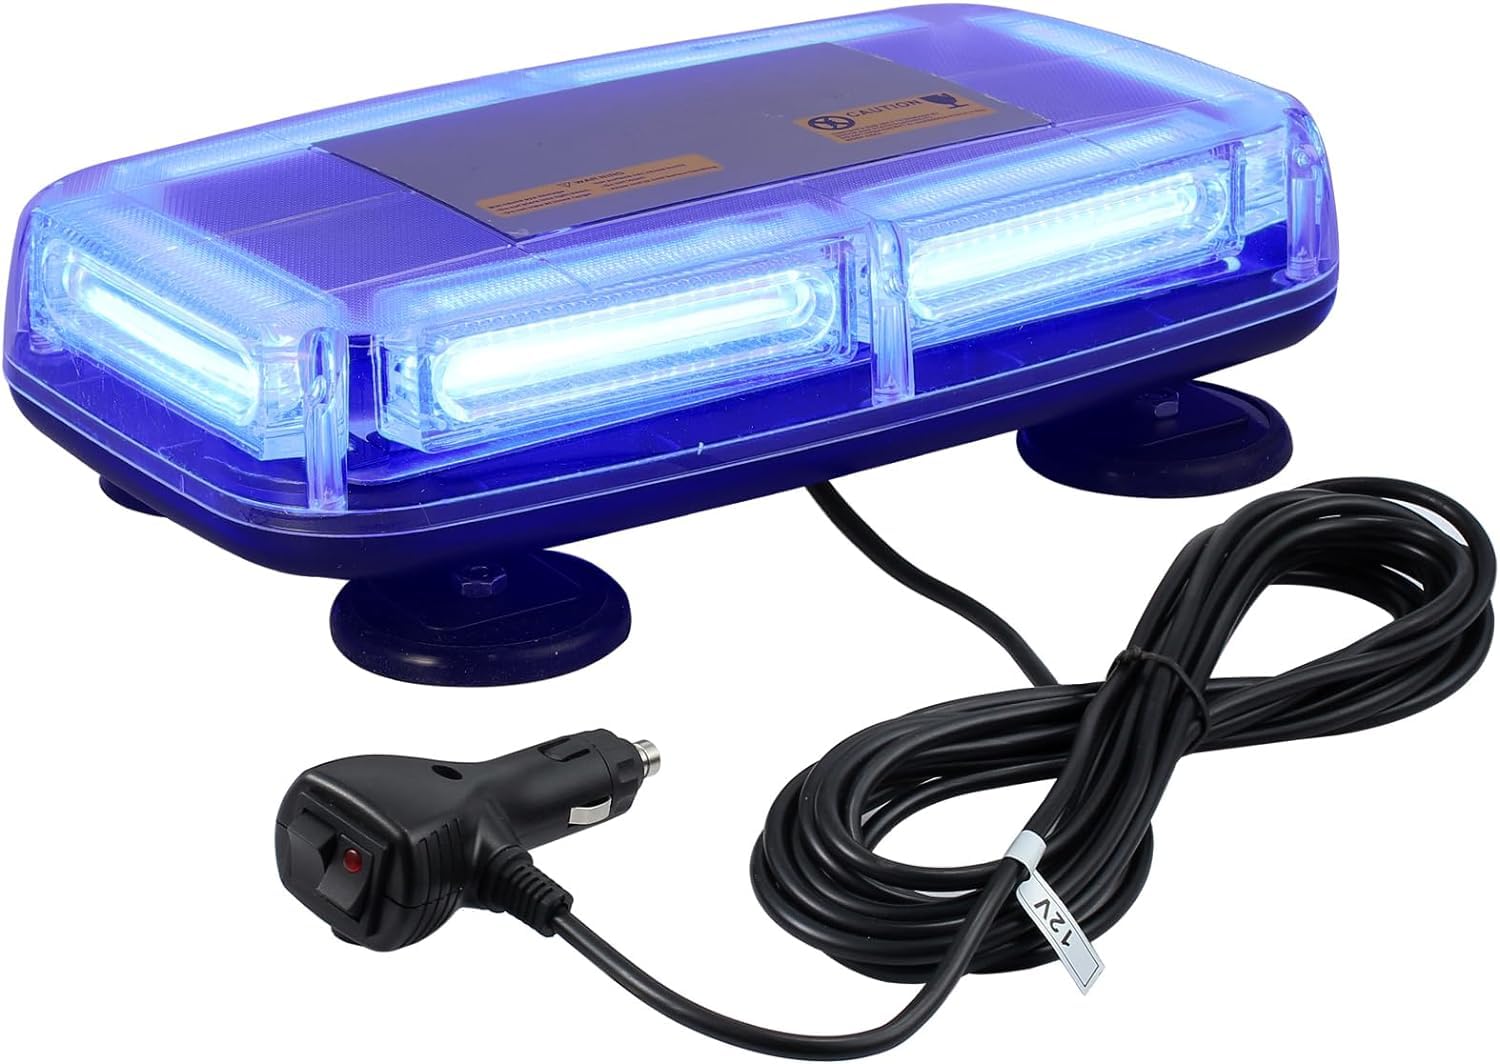 PROZOR 6-COB LED Notfall Warnblitzlicht E-Marked, IP67 Wasserdicht 7 Modi 12V/24V 60W Warnleuchte mit 4 Magnetfuß, mit Doppelschalter und 5M Netzkabel Notbeleuchtung Licht für Auto LKW (Blau) von PROZOR